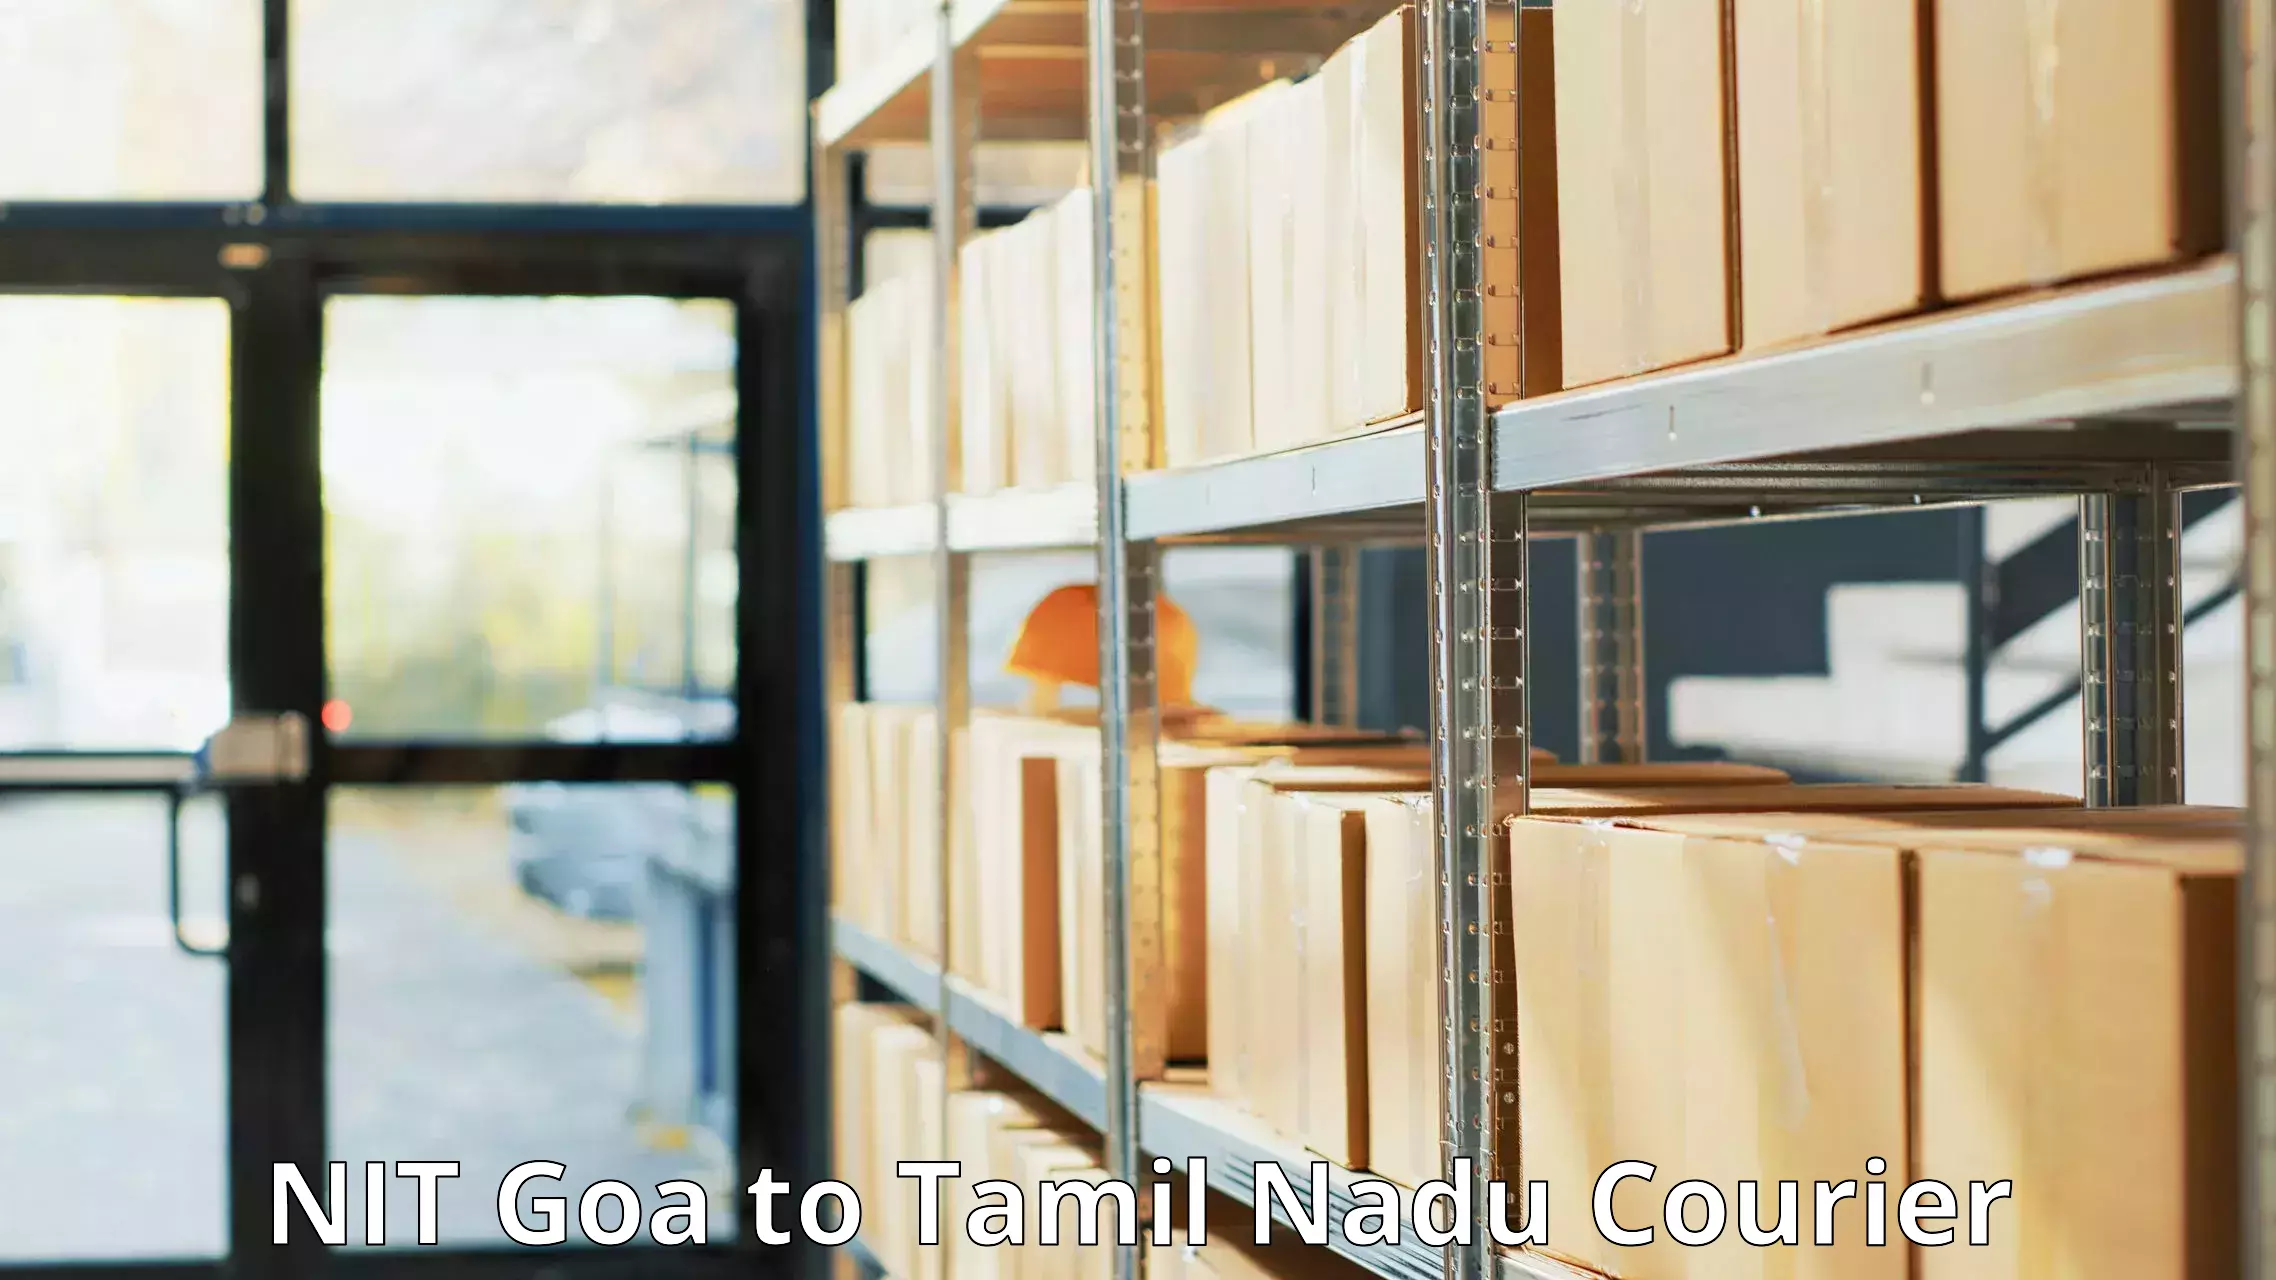 E-commerce fulfillment NIT Goa to Tamil Nadu